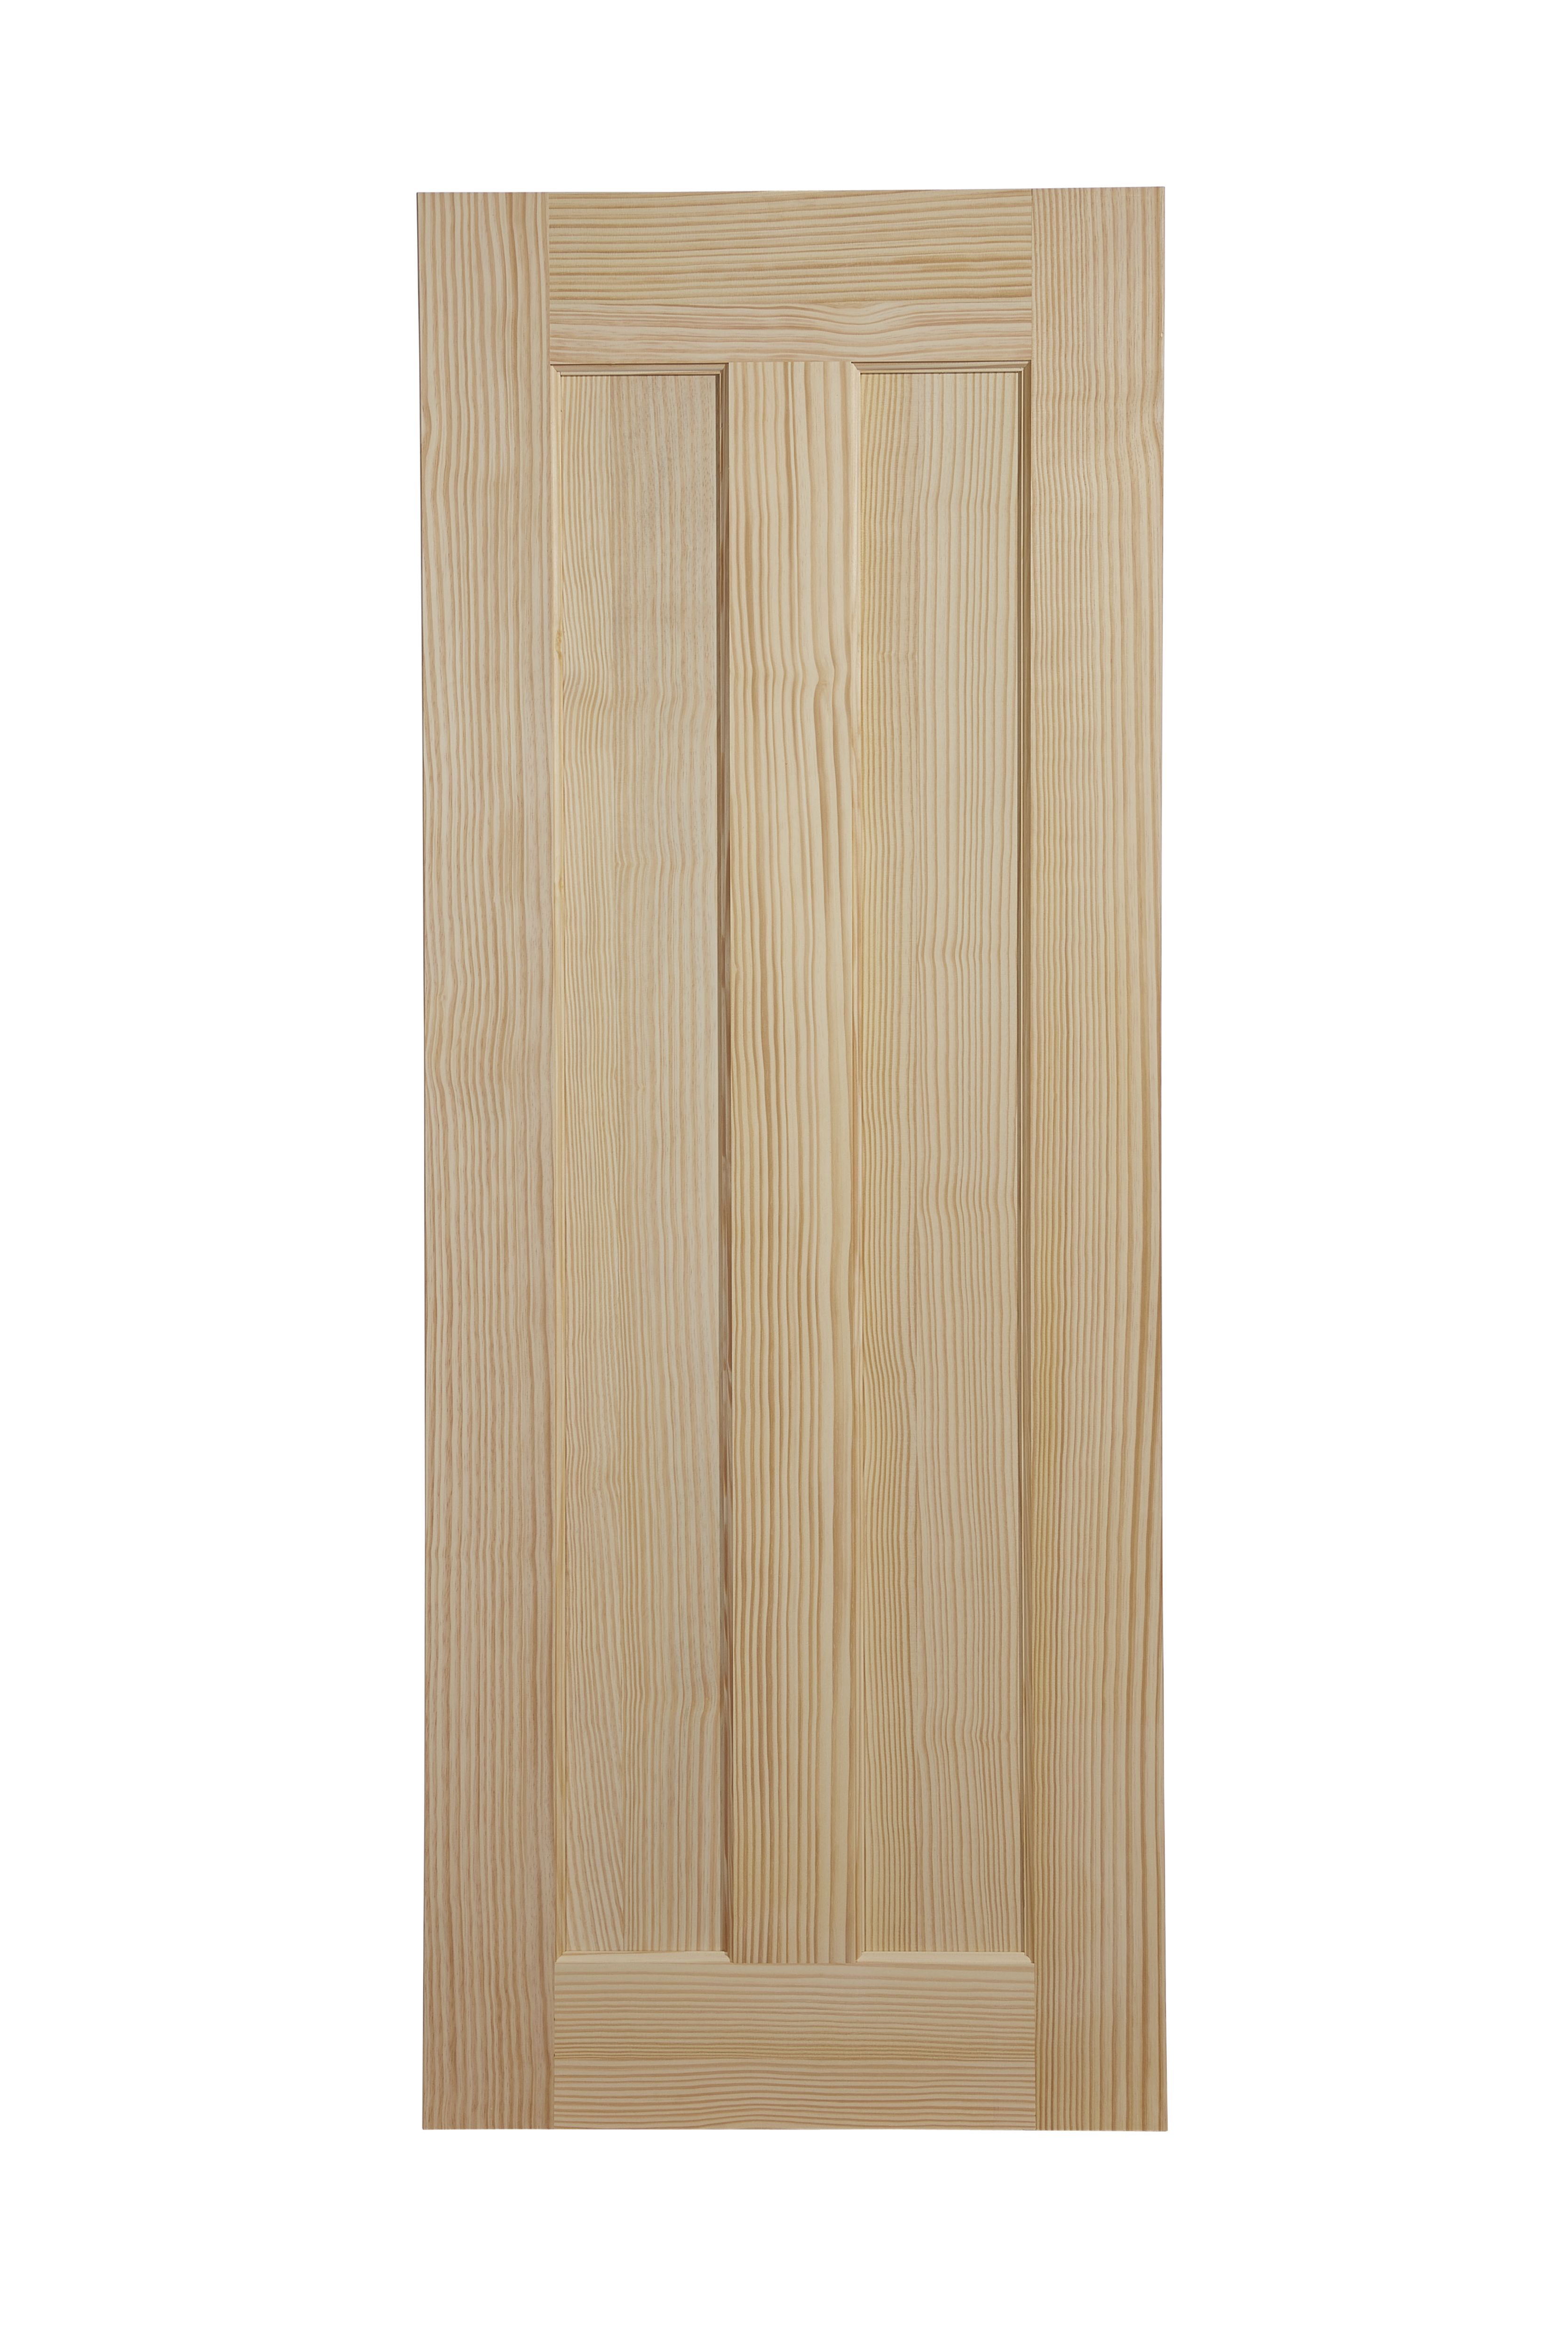 Vertical 2 panel Unglazed Internal Door, (H)1981mm (W)762mm (T)35mm